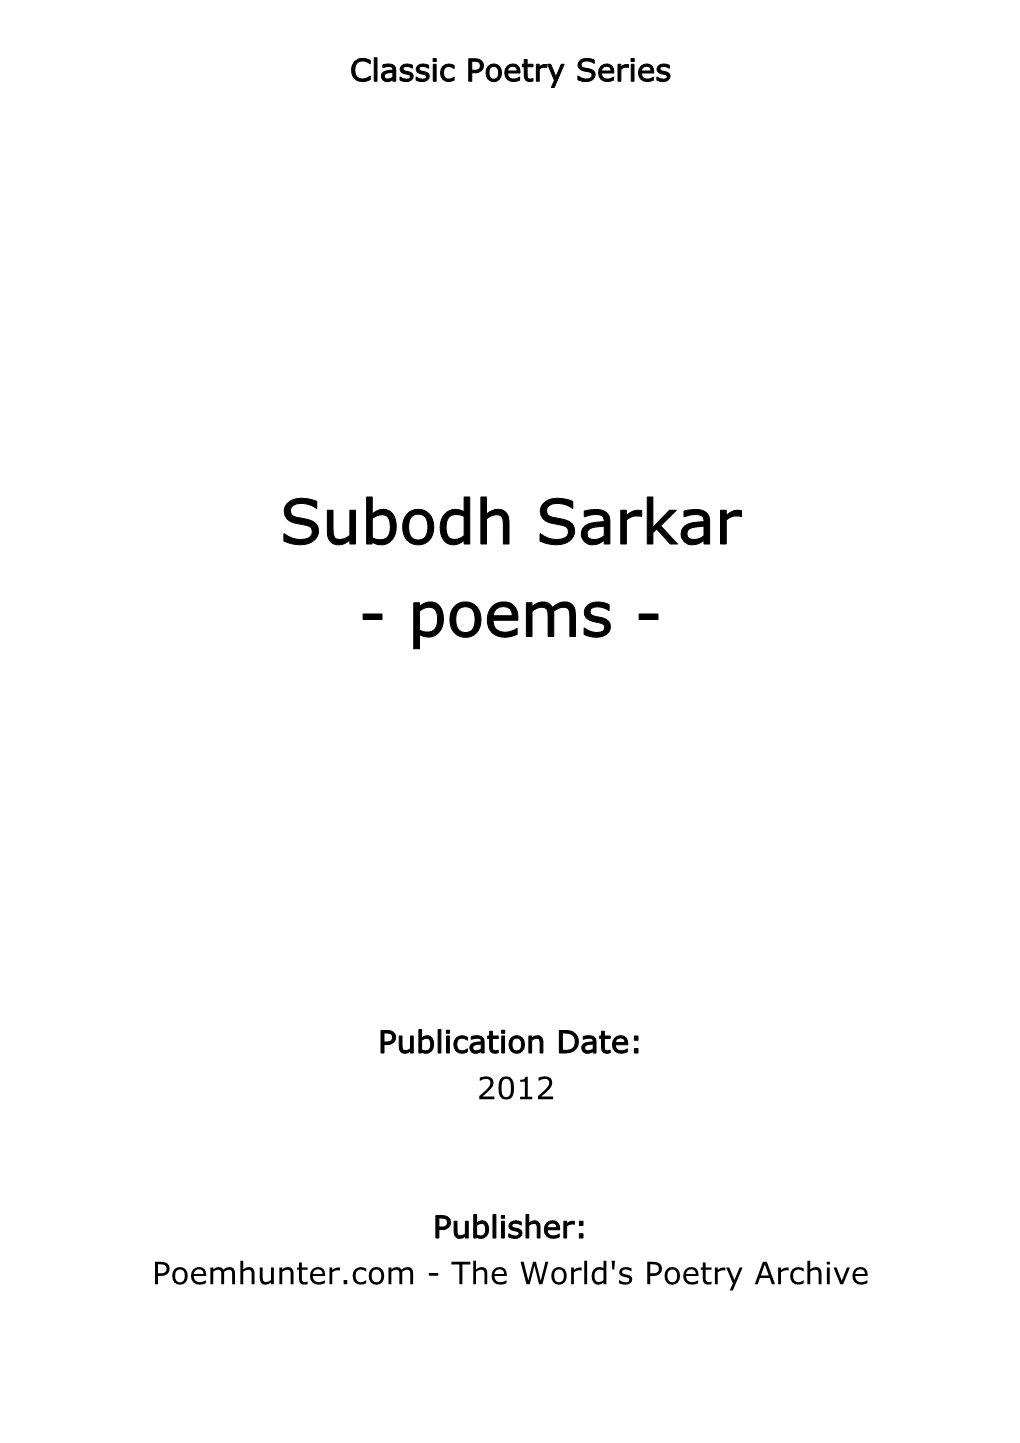 Subodh Sarkar - Poems